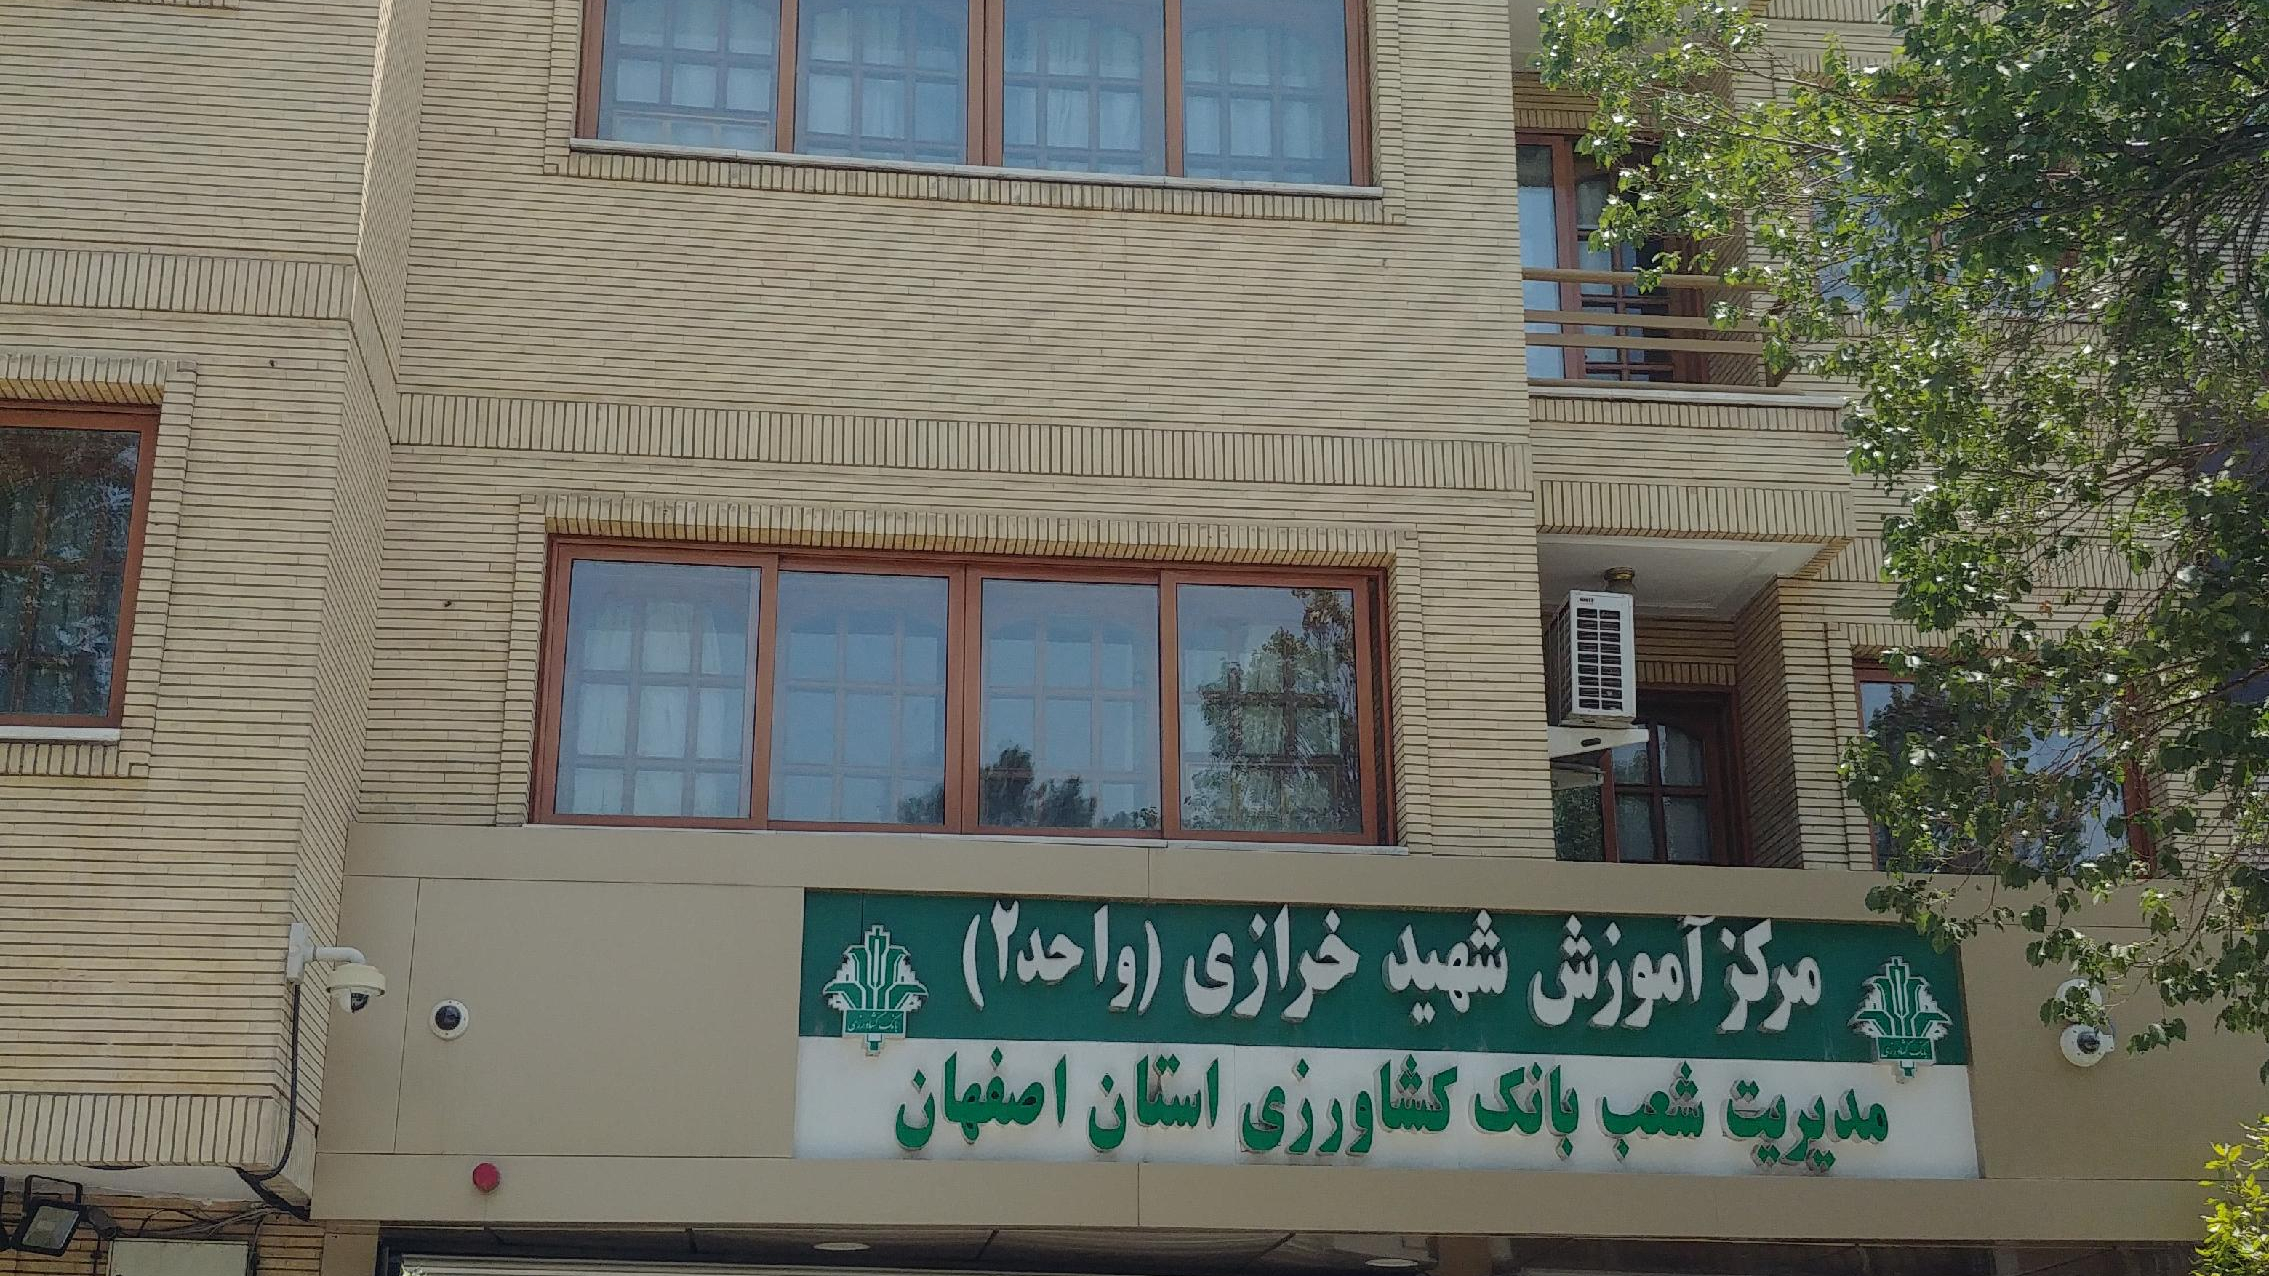 مرکز آموزش شهید خرازی واحد 2 بانک کشاورزی ( مهمانسرای بانک کشاورزی )